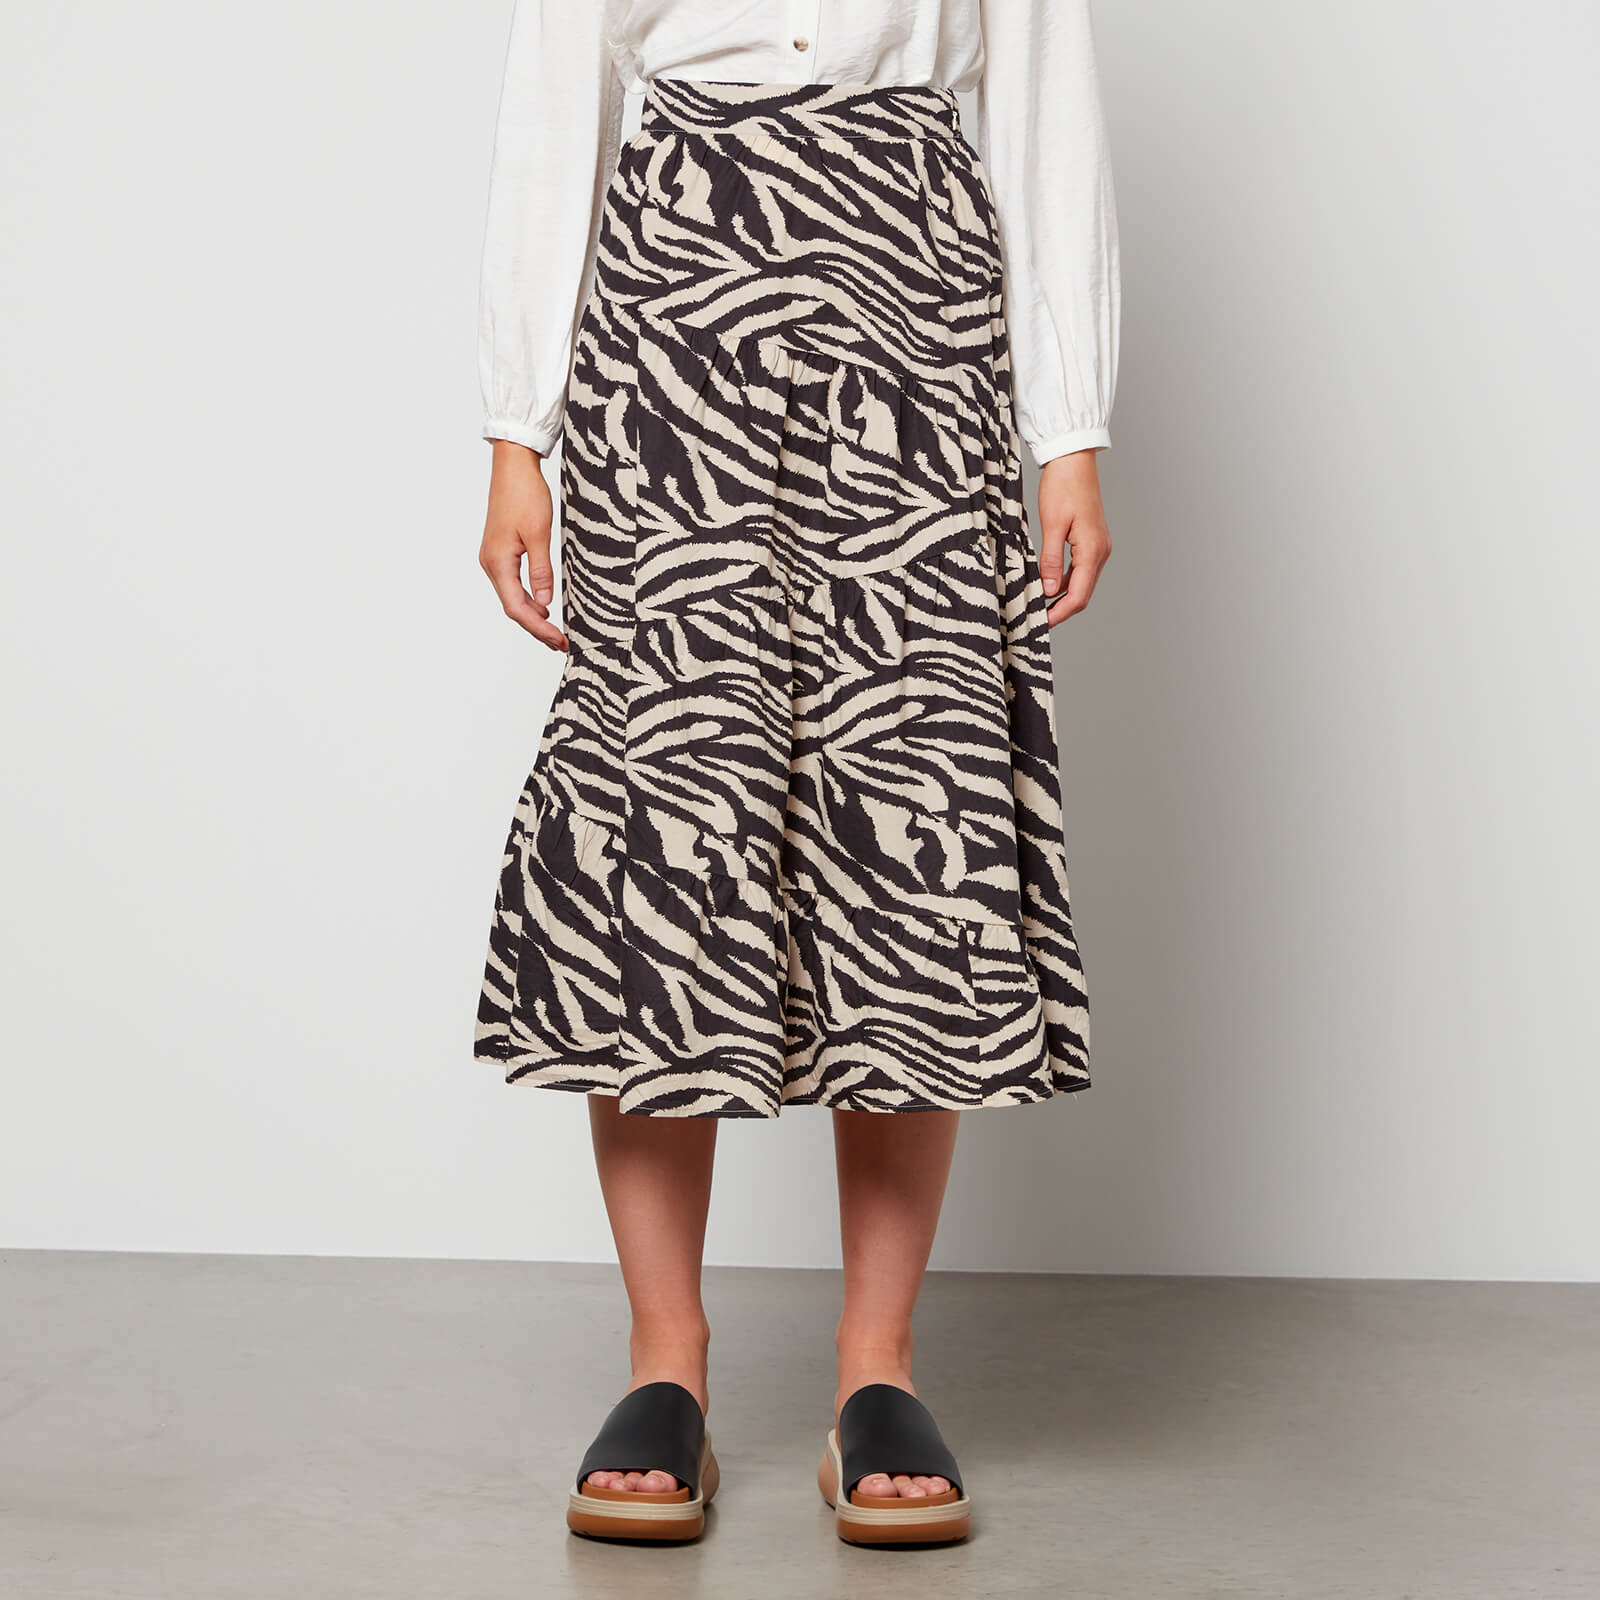 Whistles Women's Zebra Print Tiered Skirt - Black/Multi - UK 6